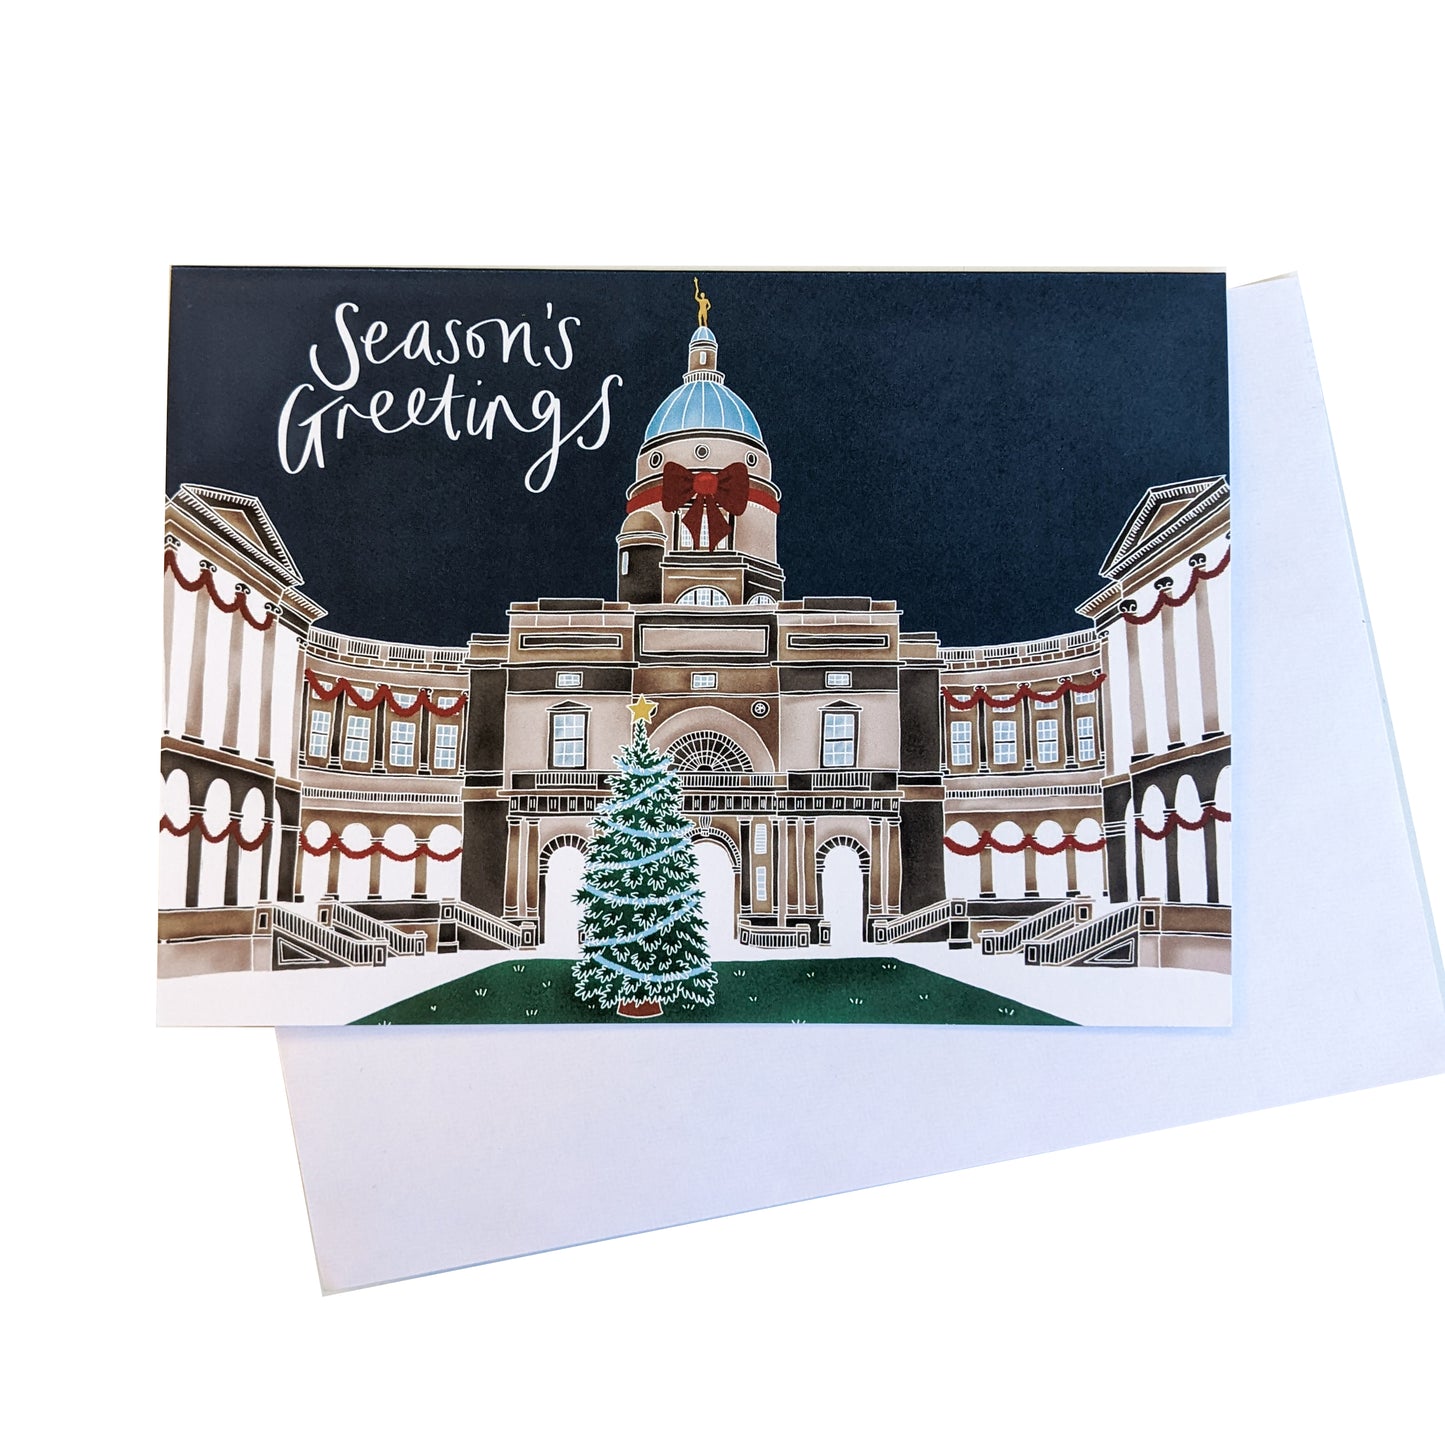 Old College Seasons Greetings Card